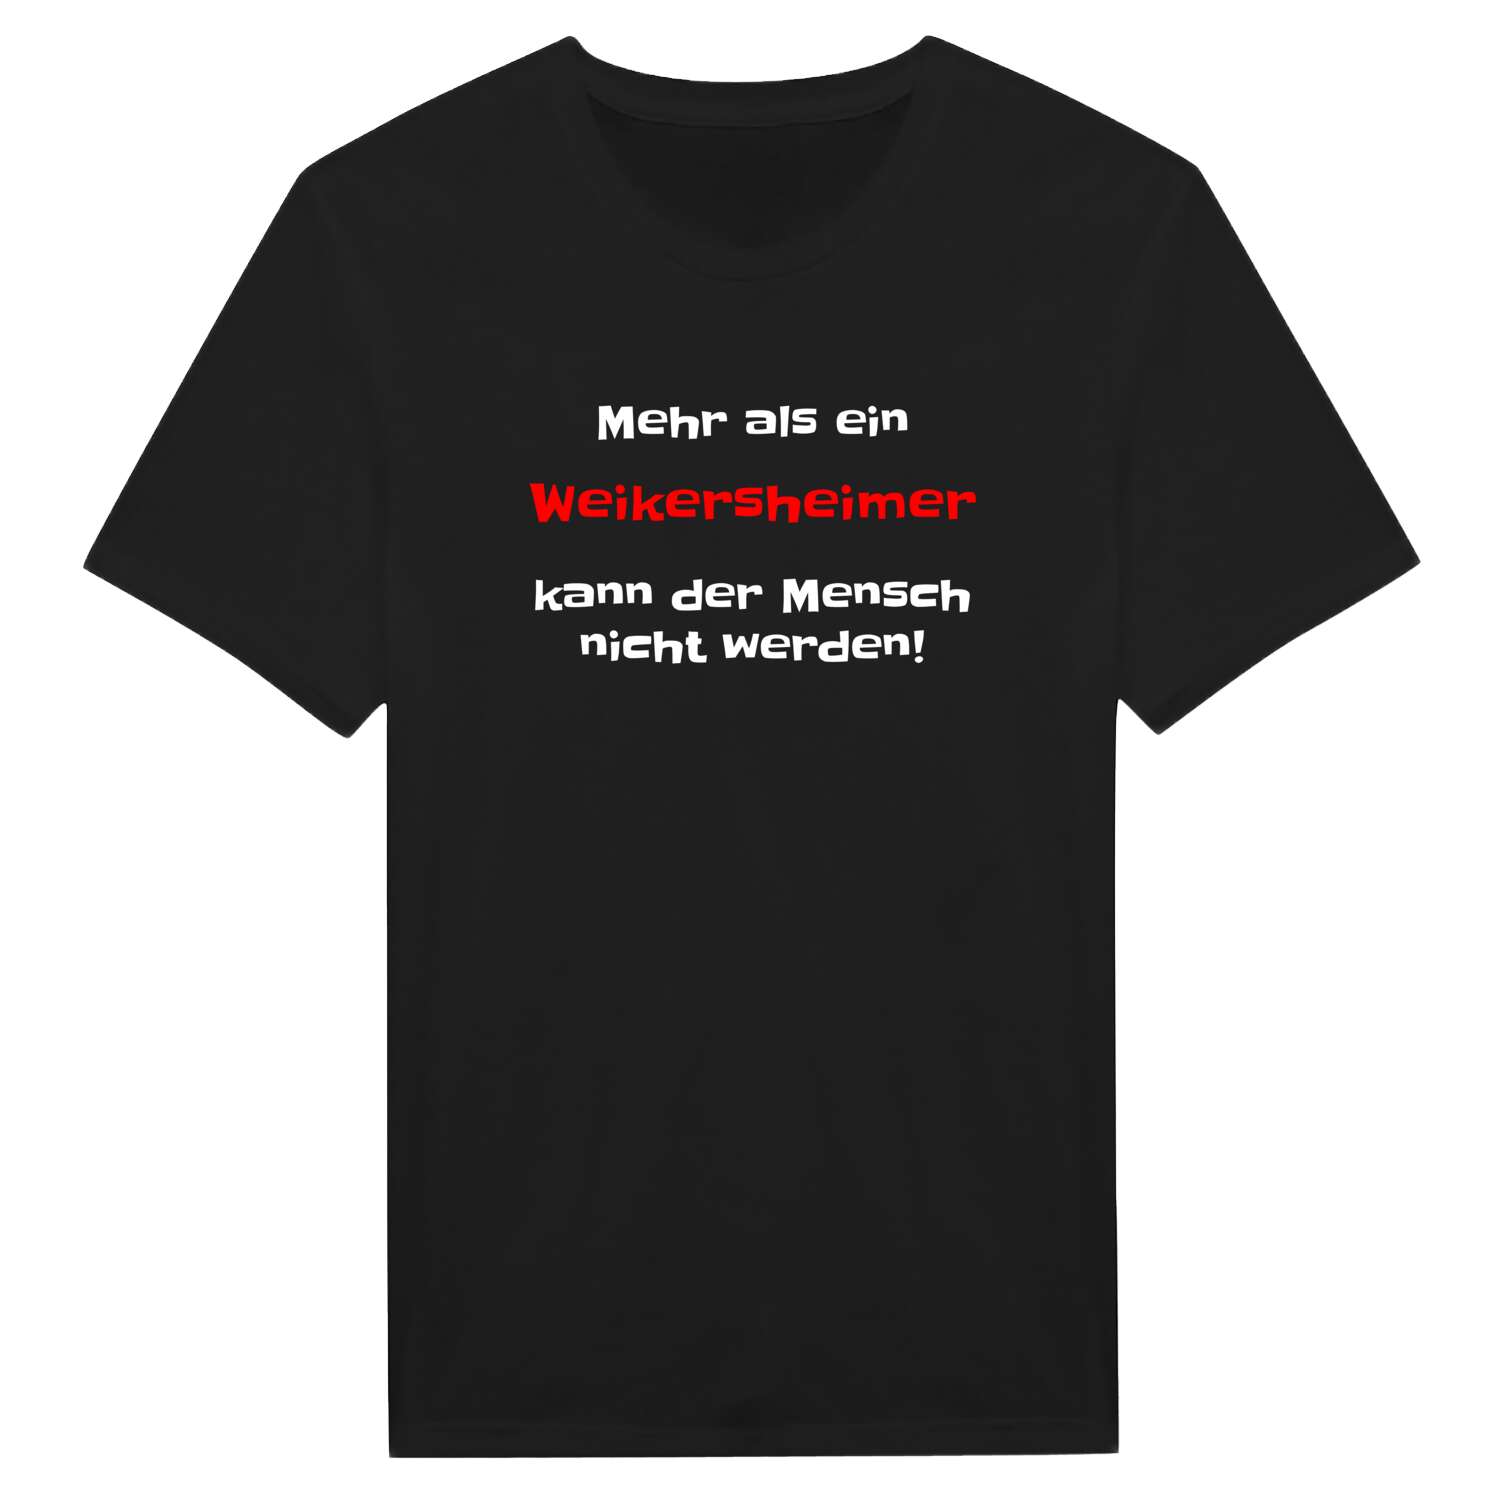 Weikersheim T-Shirt »Mehr als ein«